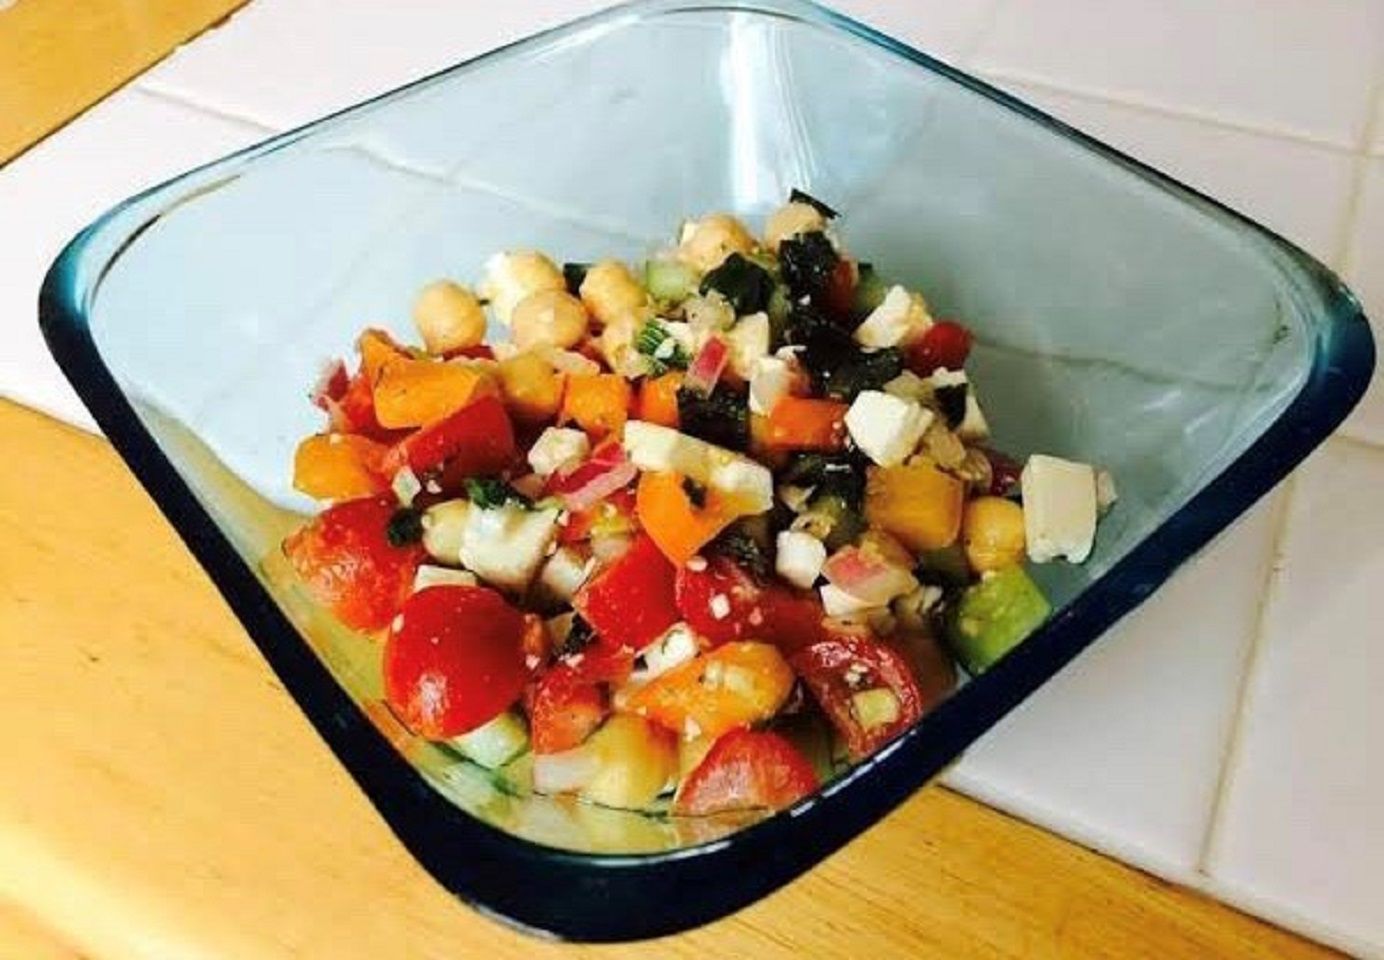 Salad đậu xanh lấy cảm hứng từ Hy Lạp ướp